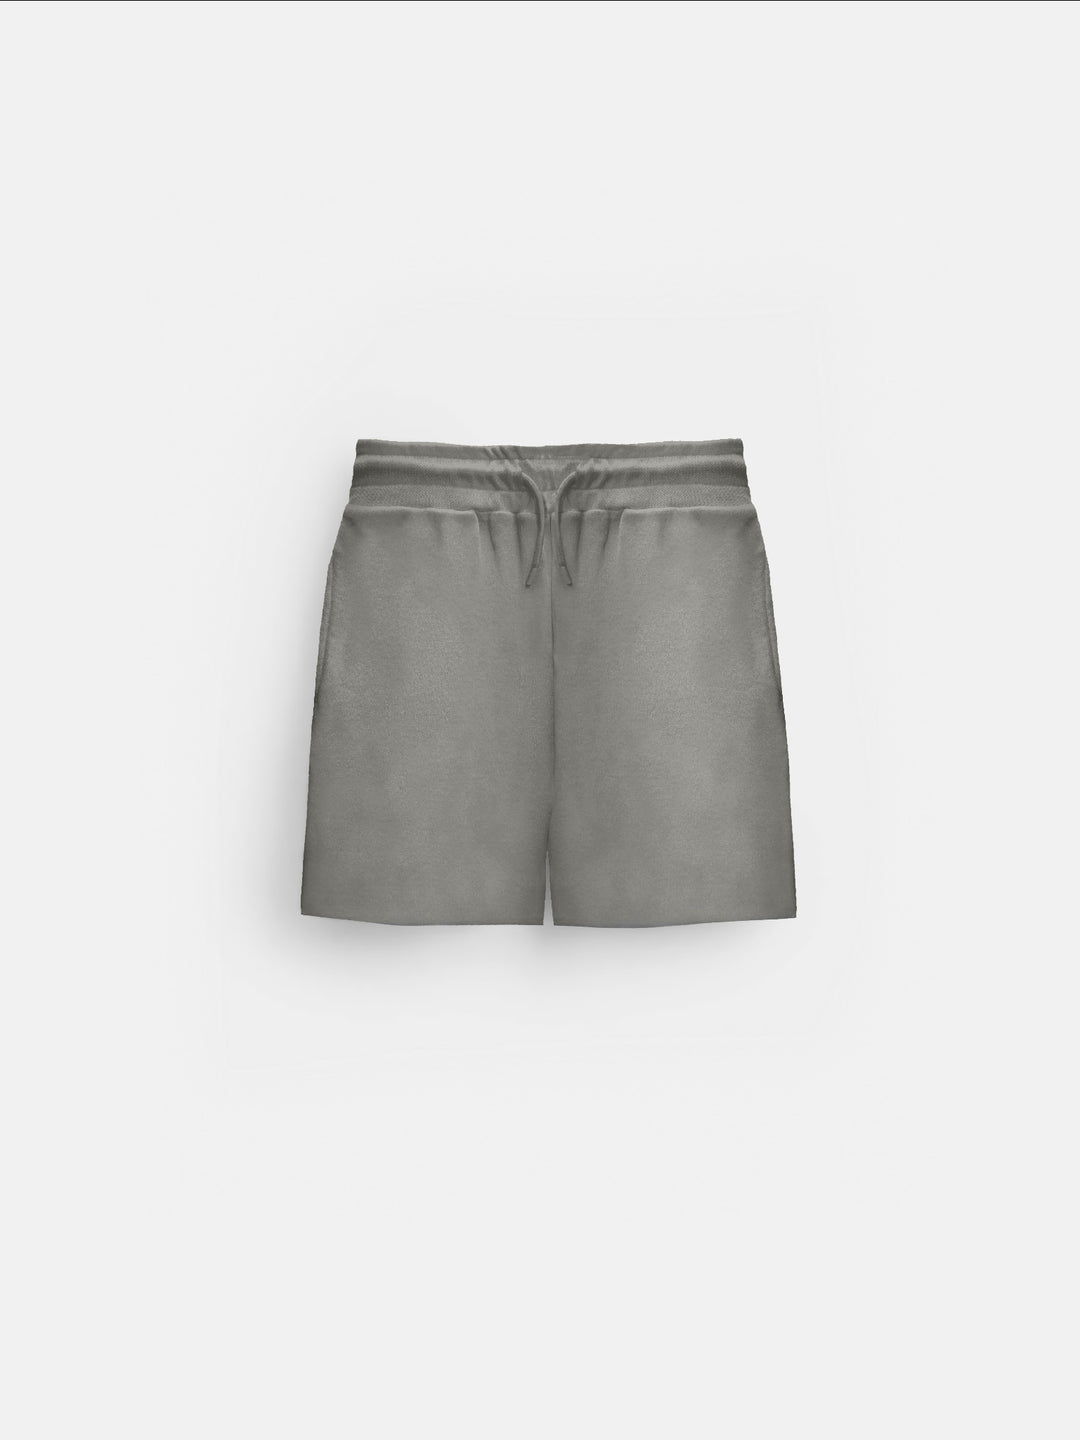 Loose Fit Knit Shorts - Grey